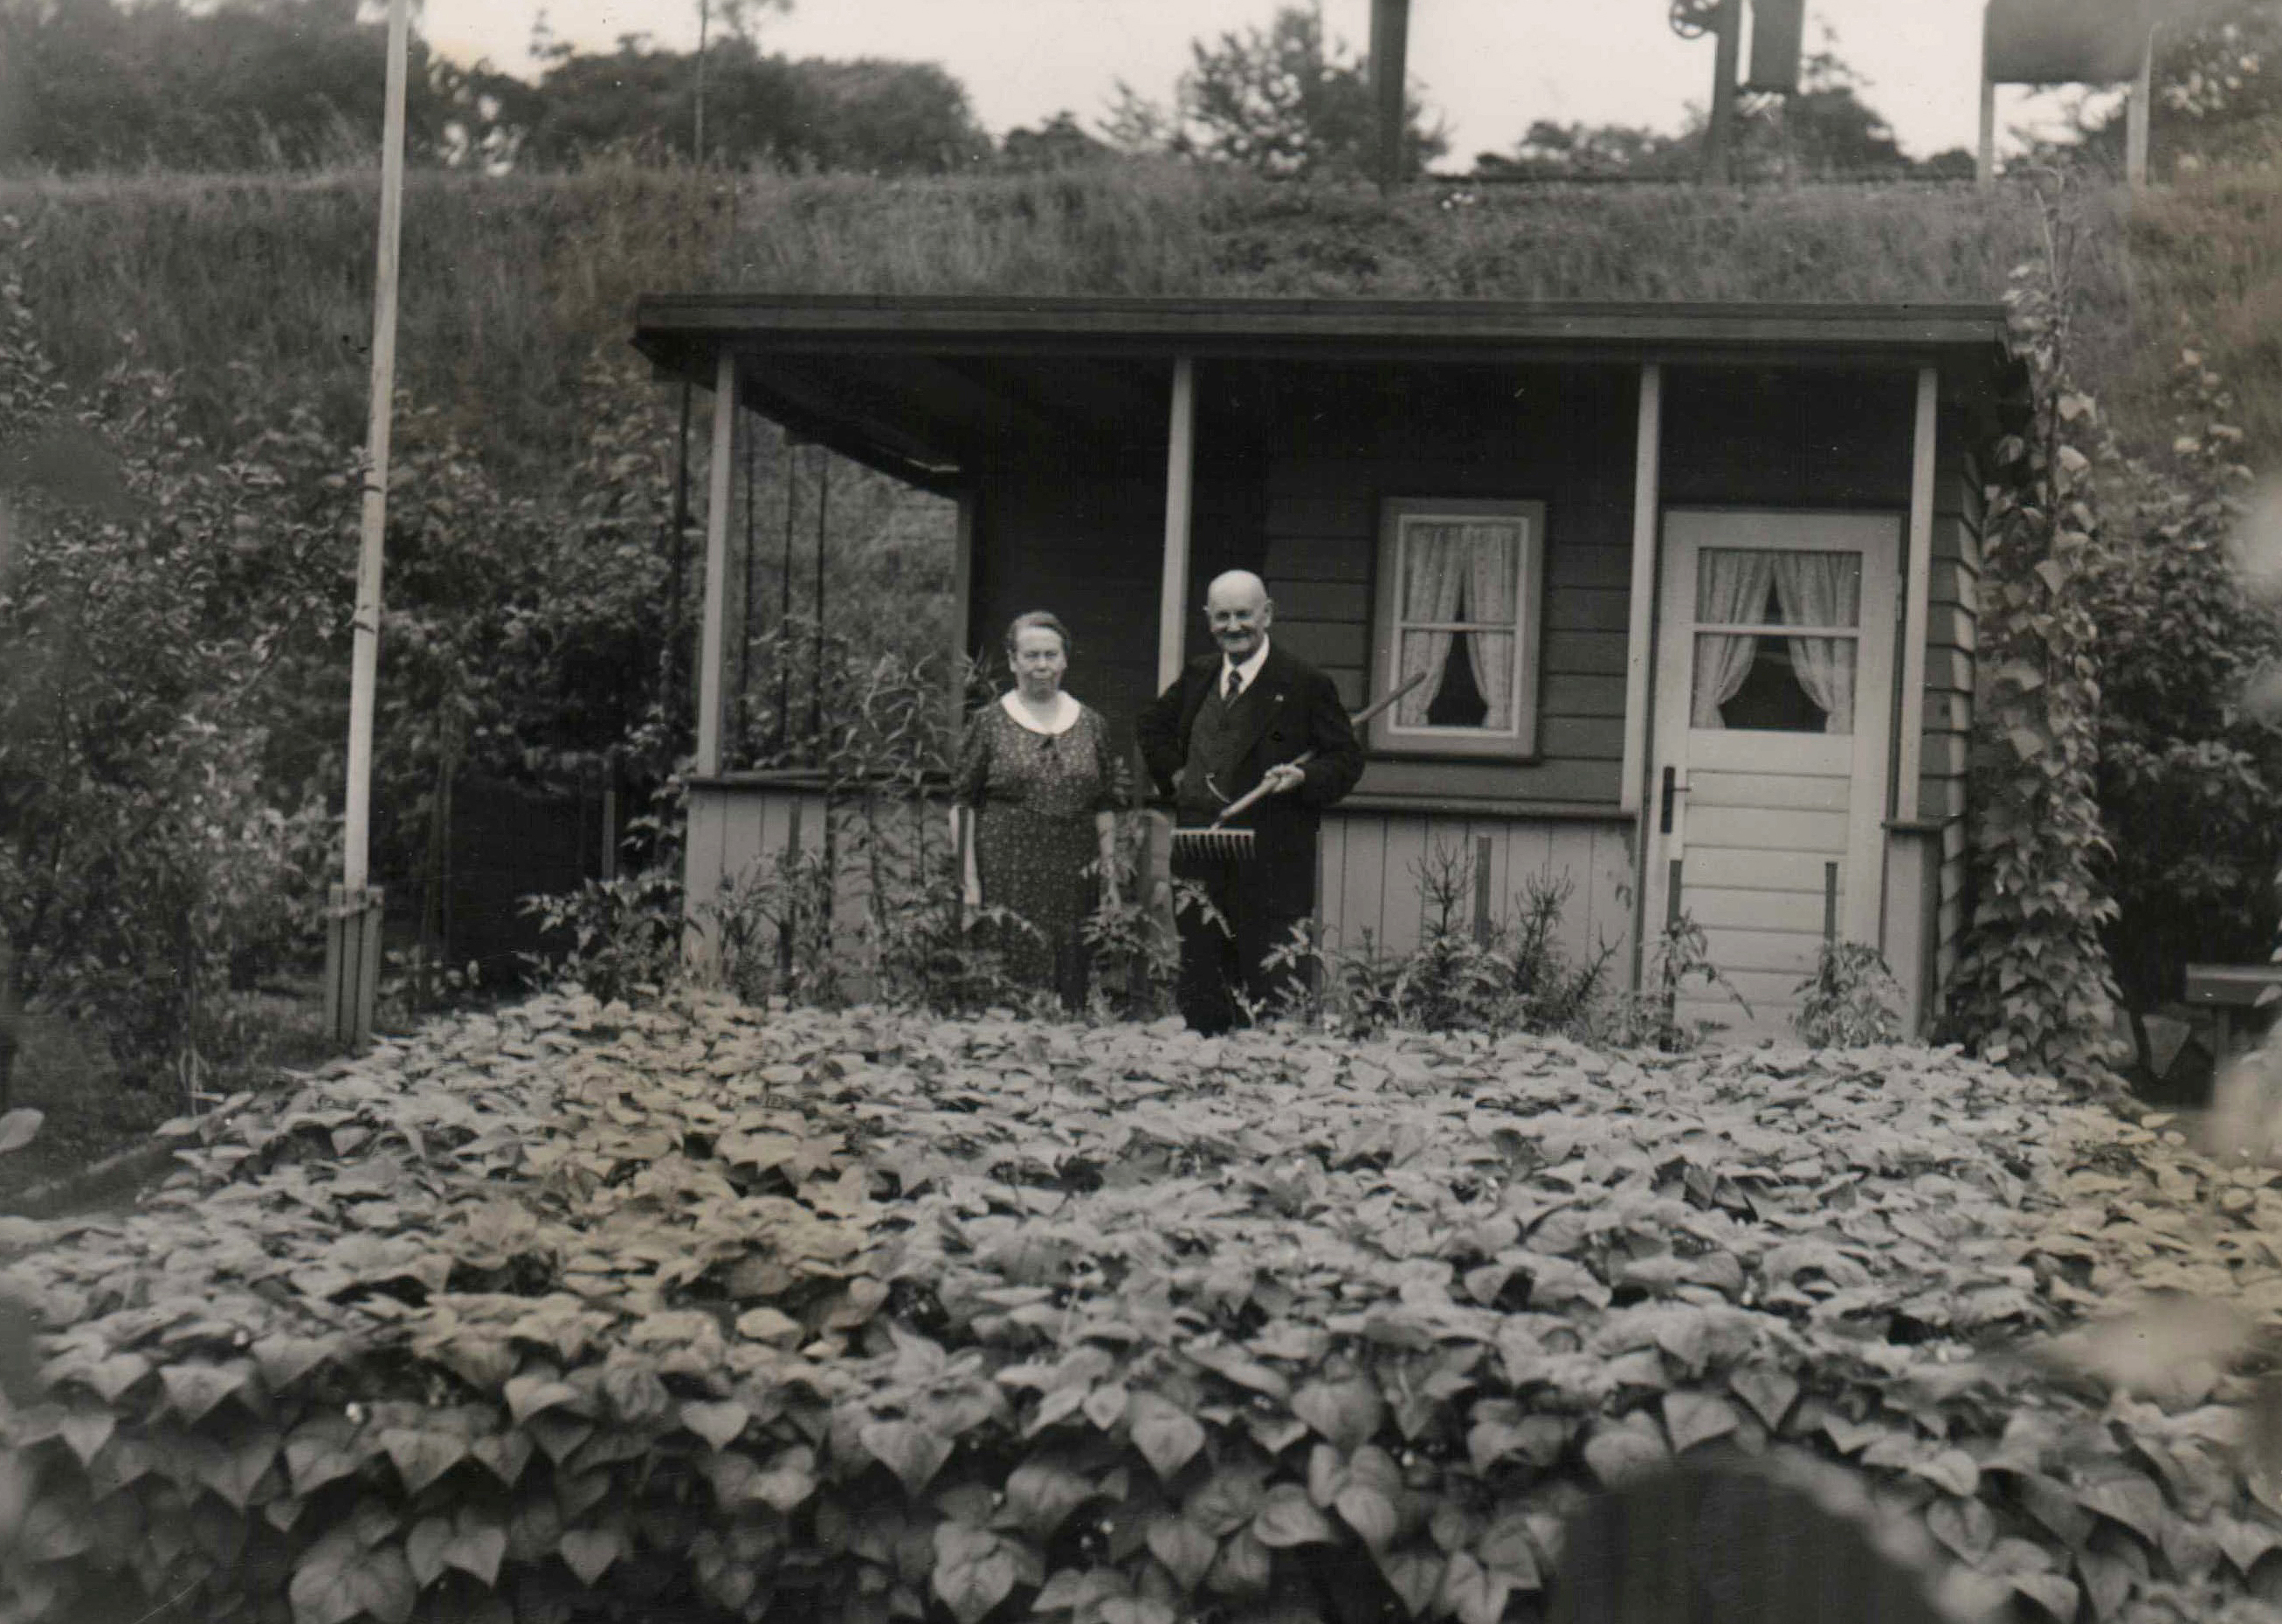 Historisches Schwarzweiß-Foto von einer Frau und einem Mann vor einer Gartenlaube an einem Gemüsebeet